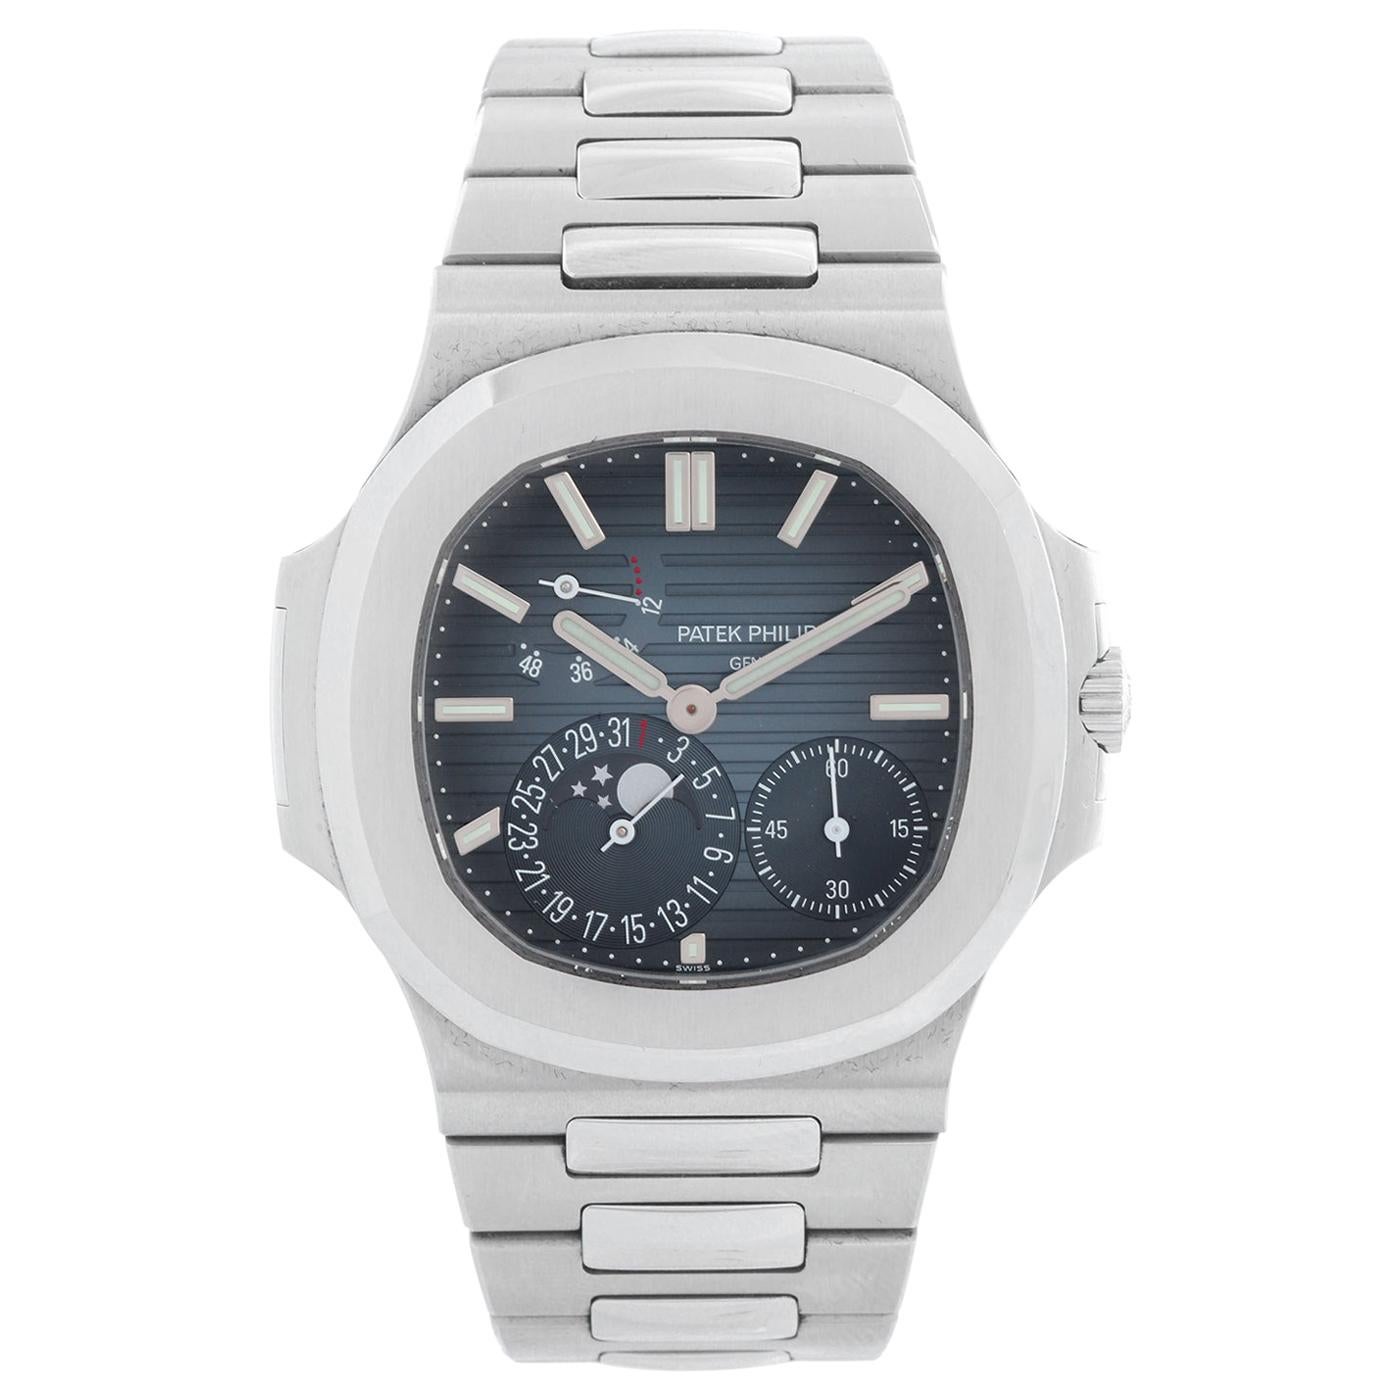 Patek Philippe & Co. Nautilus Men's Watch 5712 G-001